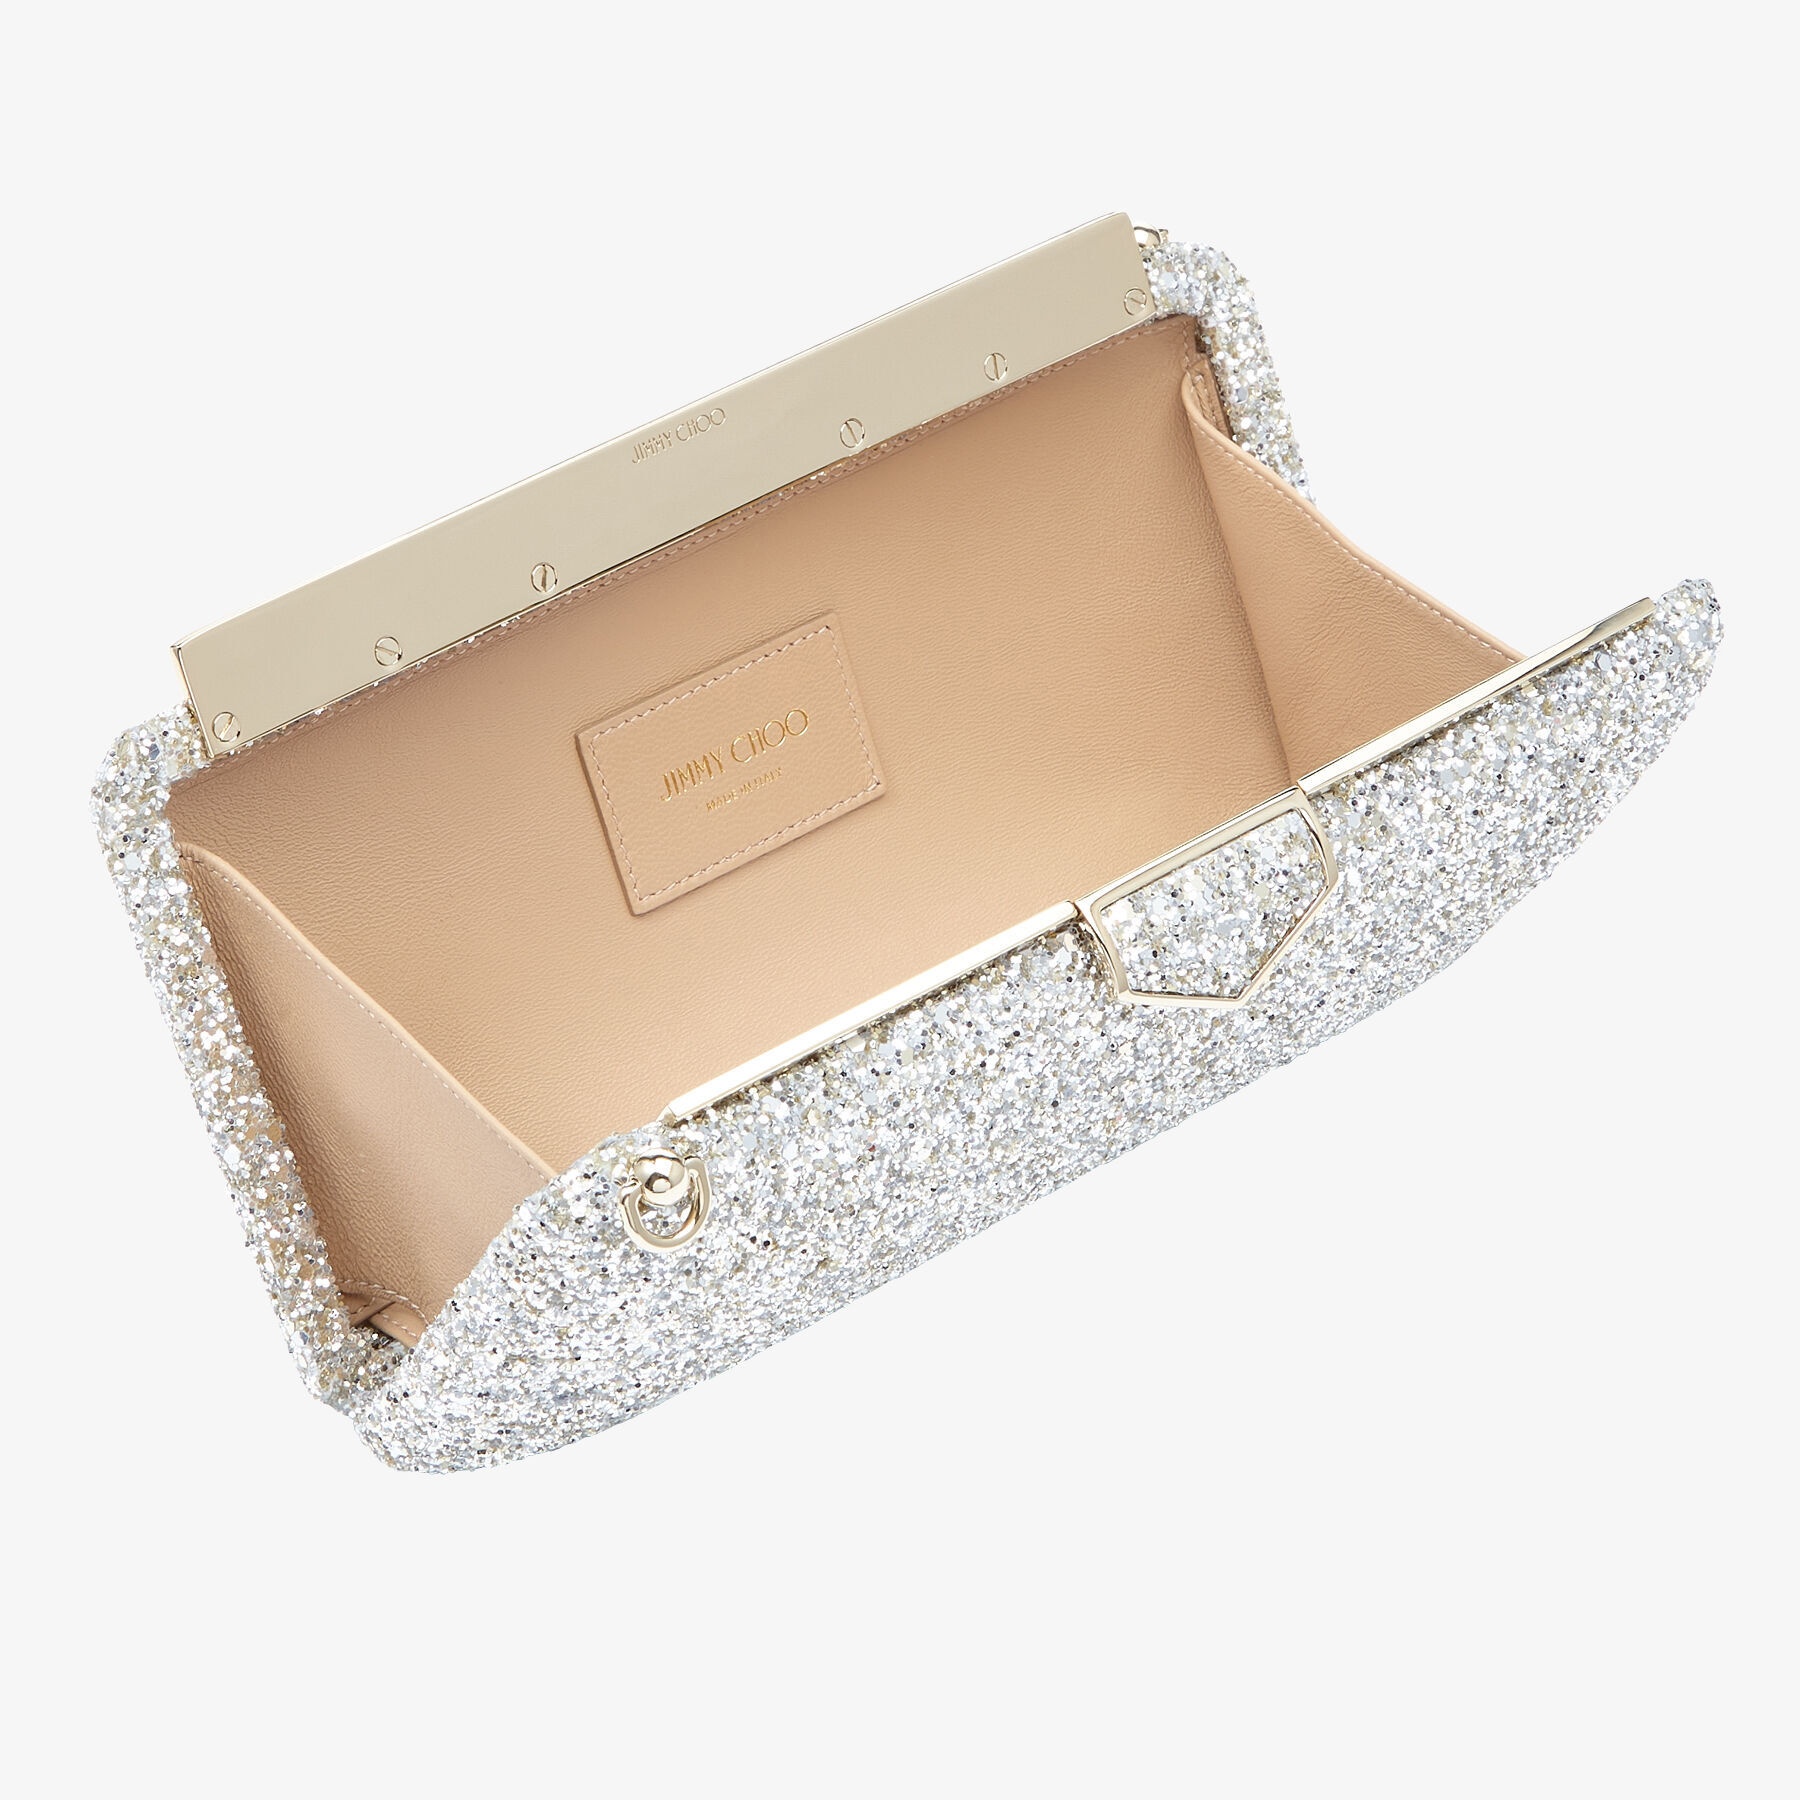 Ellipse
Champagne Coarse Glitter Fabric Clutch Bag - 3